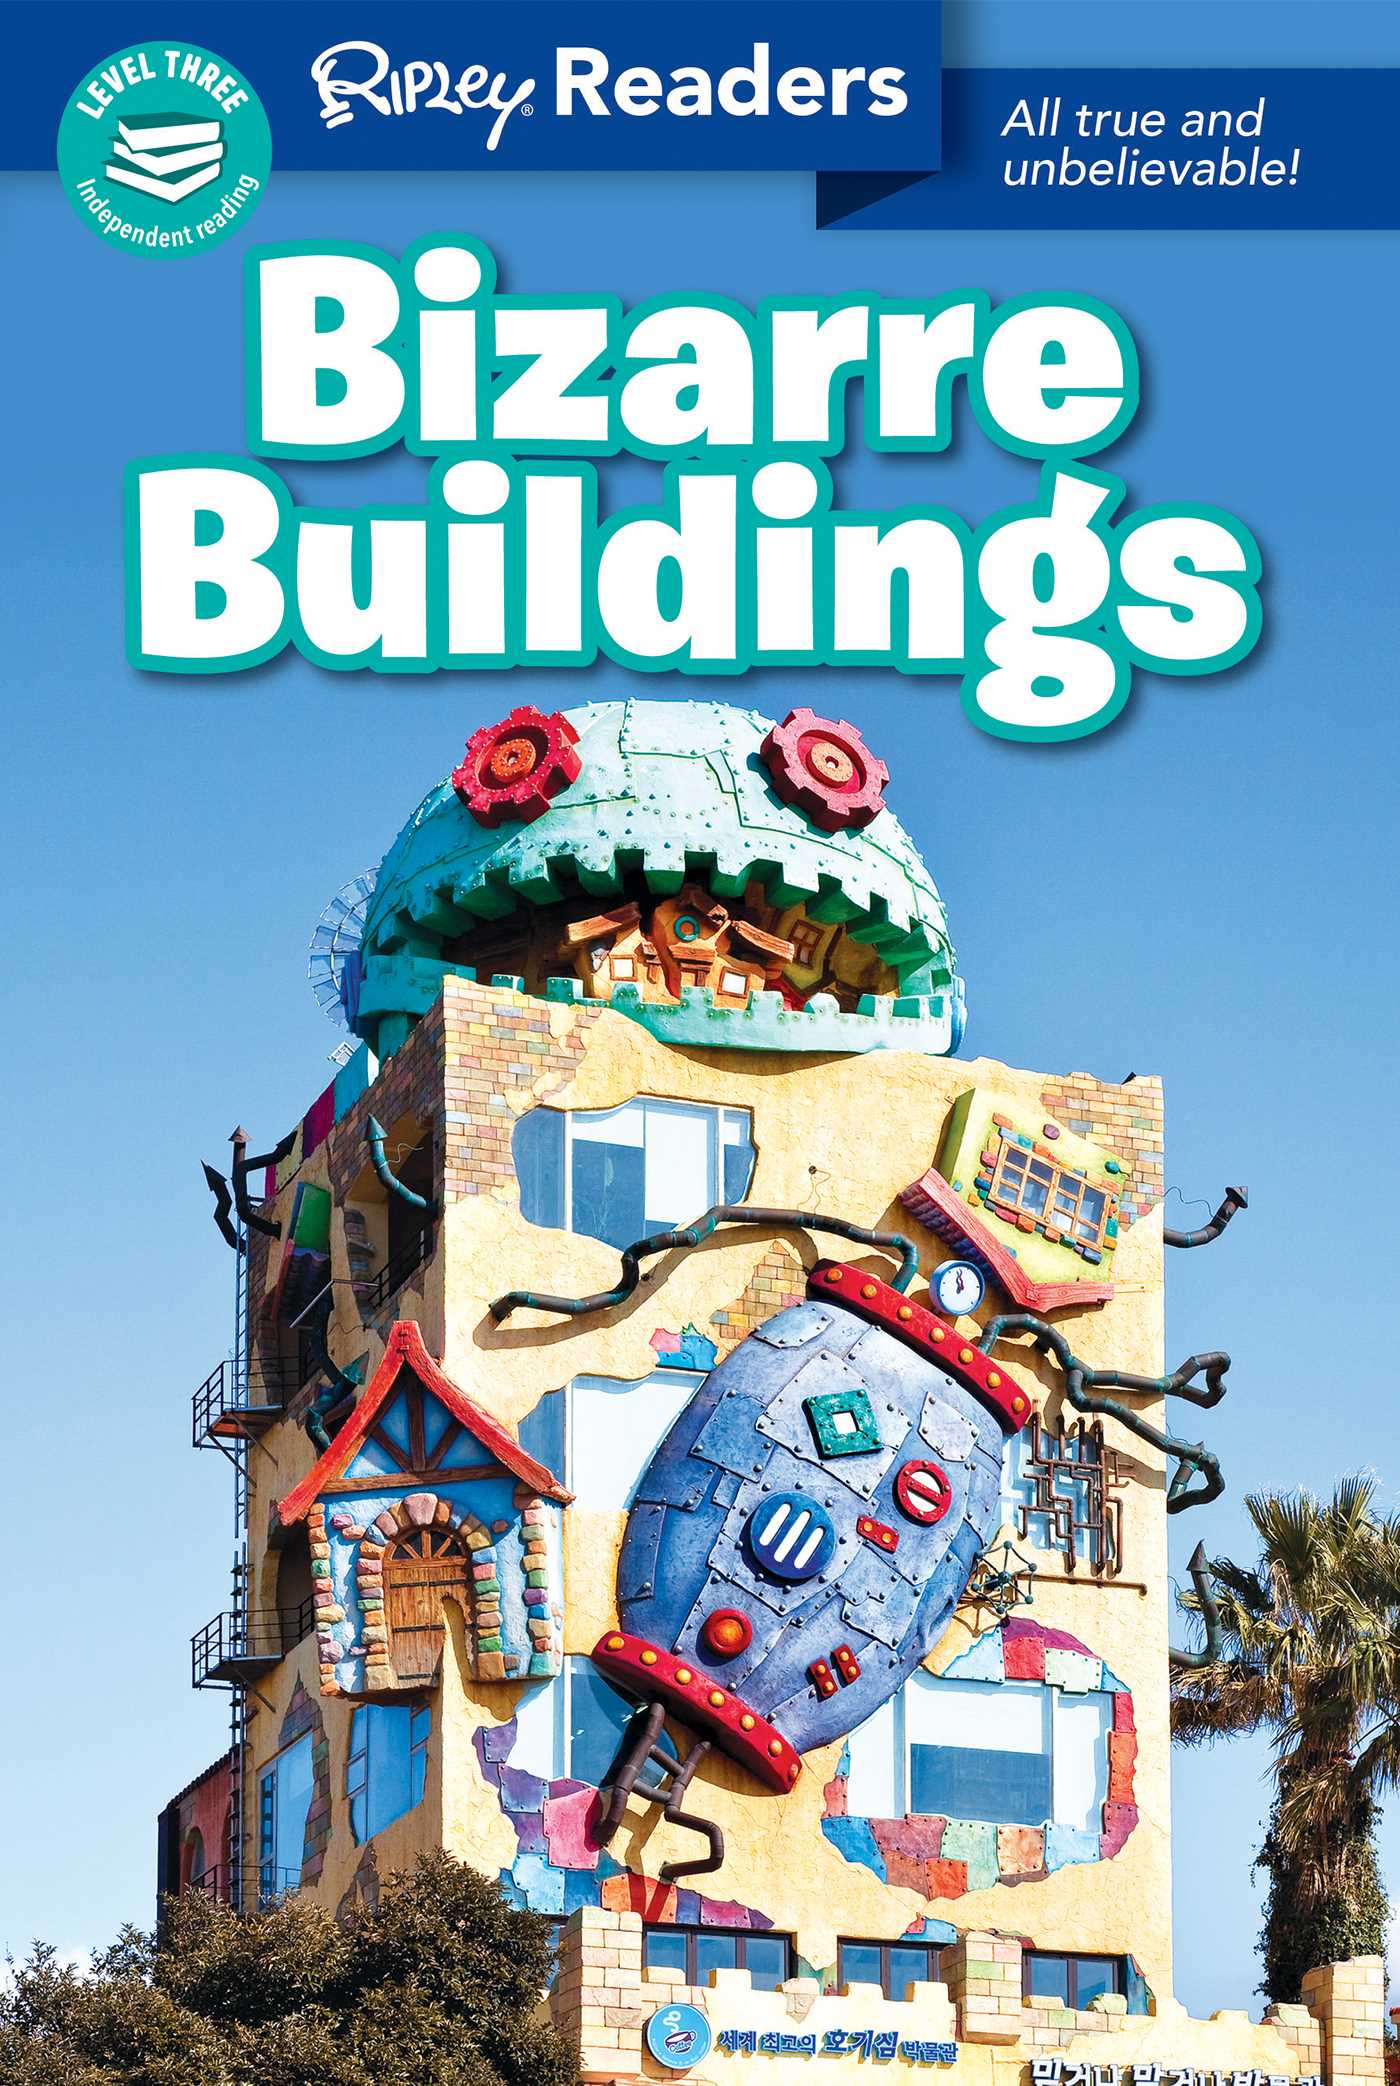 Ripley Readers LEVEL3 Bizarre Buildings | Believe It Or Not!, Ripley's